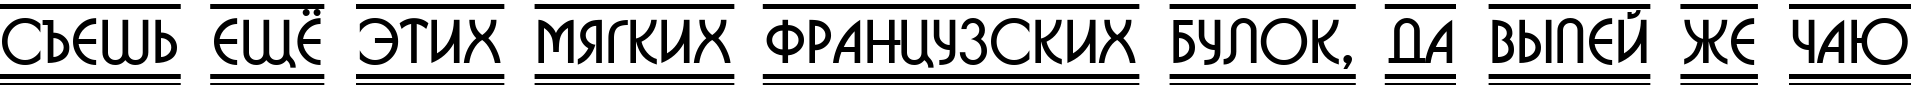 Пример написания шрифтом a_BosaNovaDc2Fr текста на русском